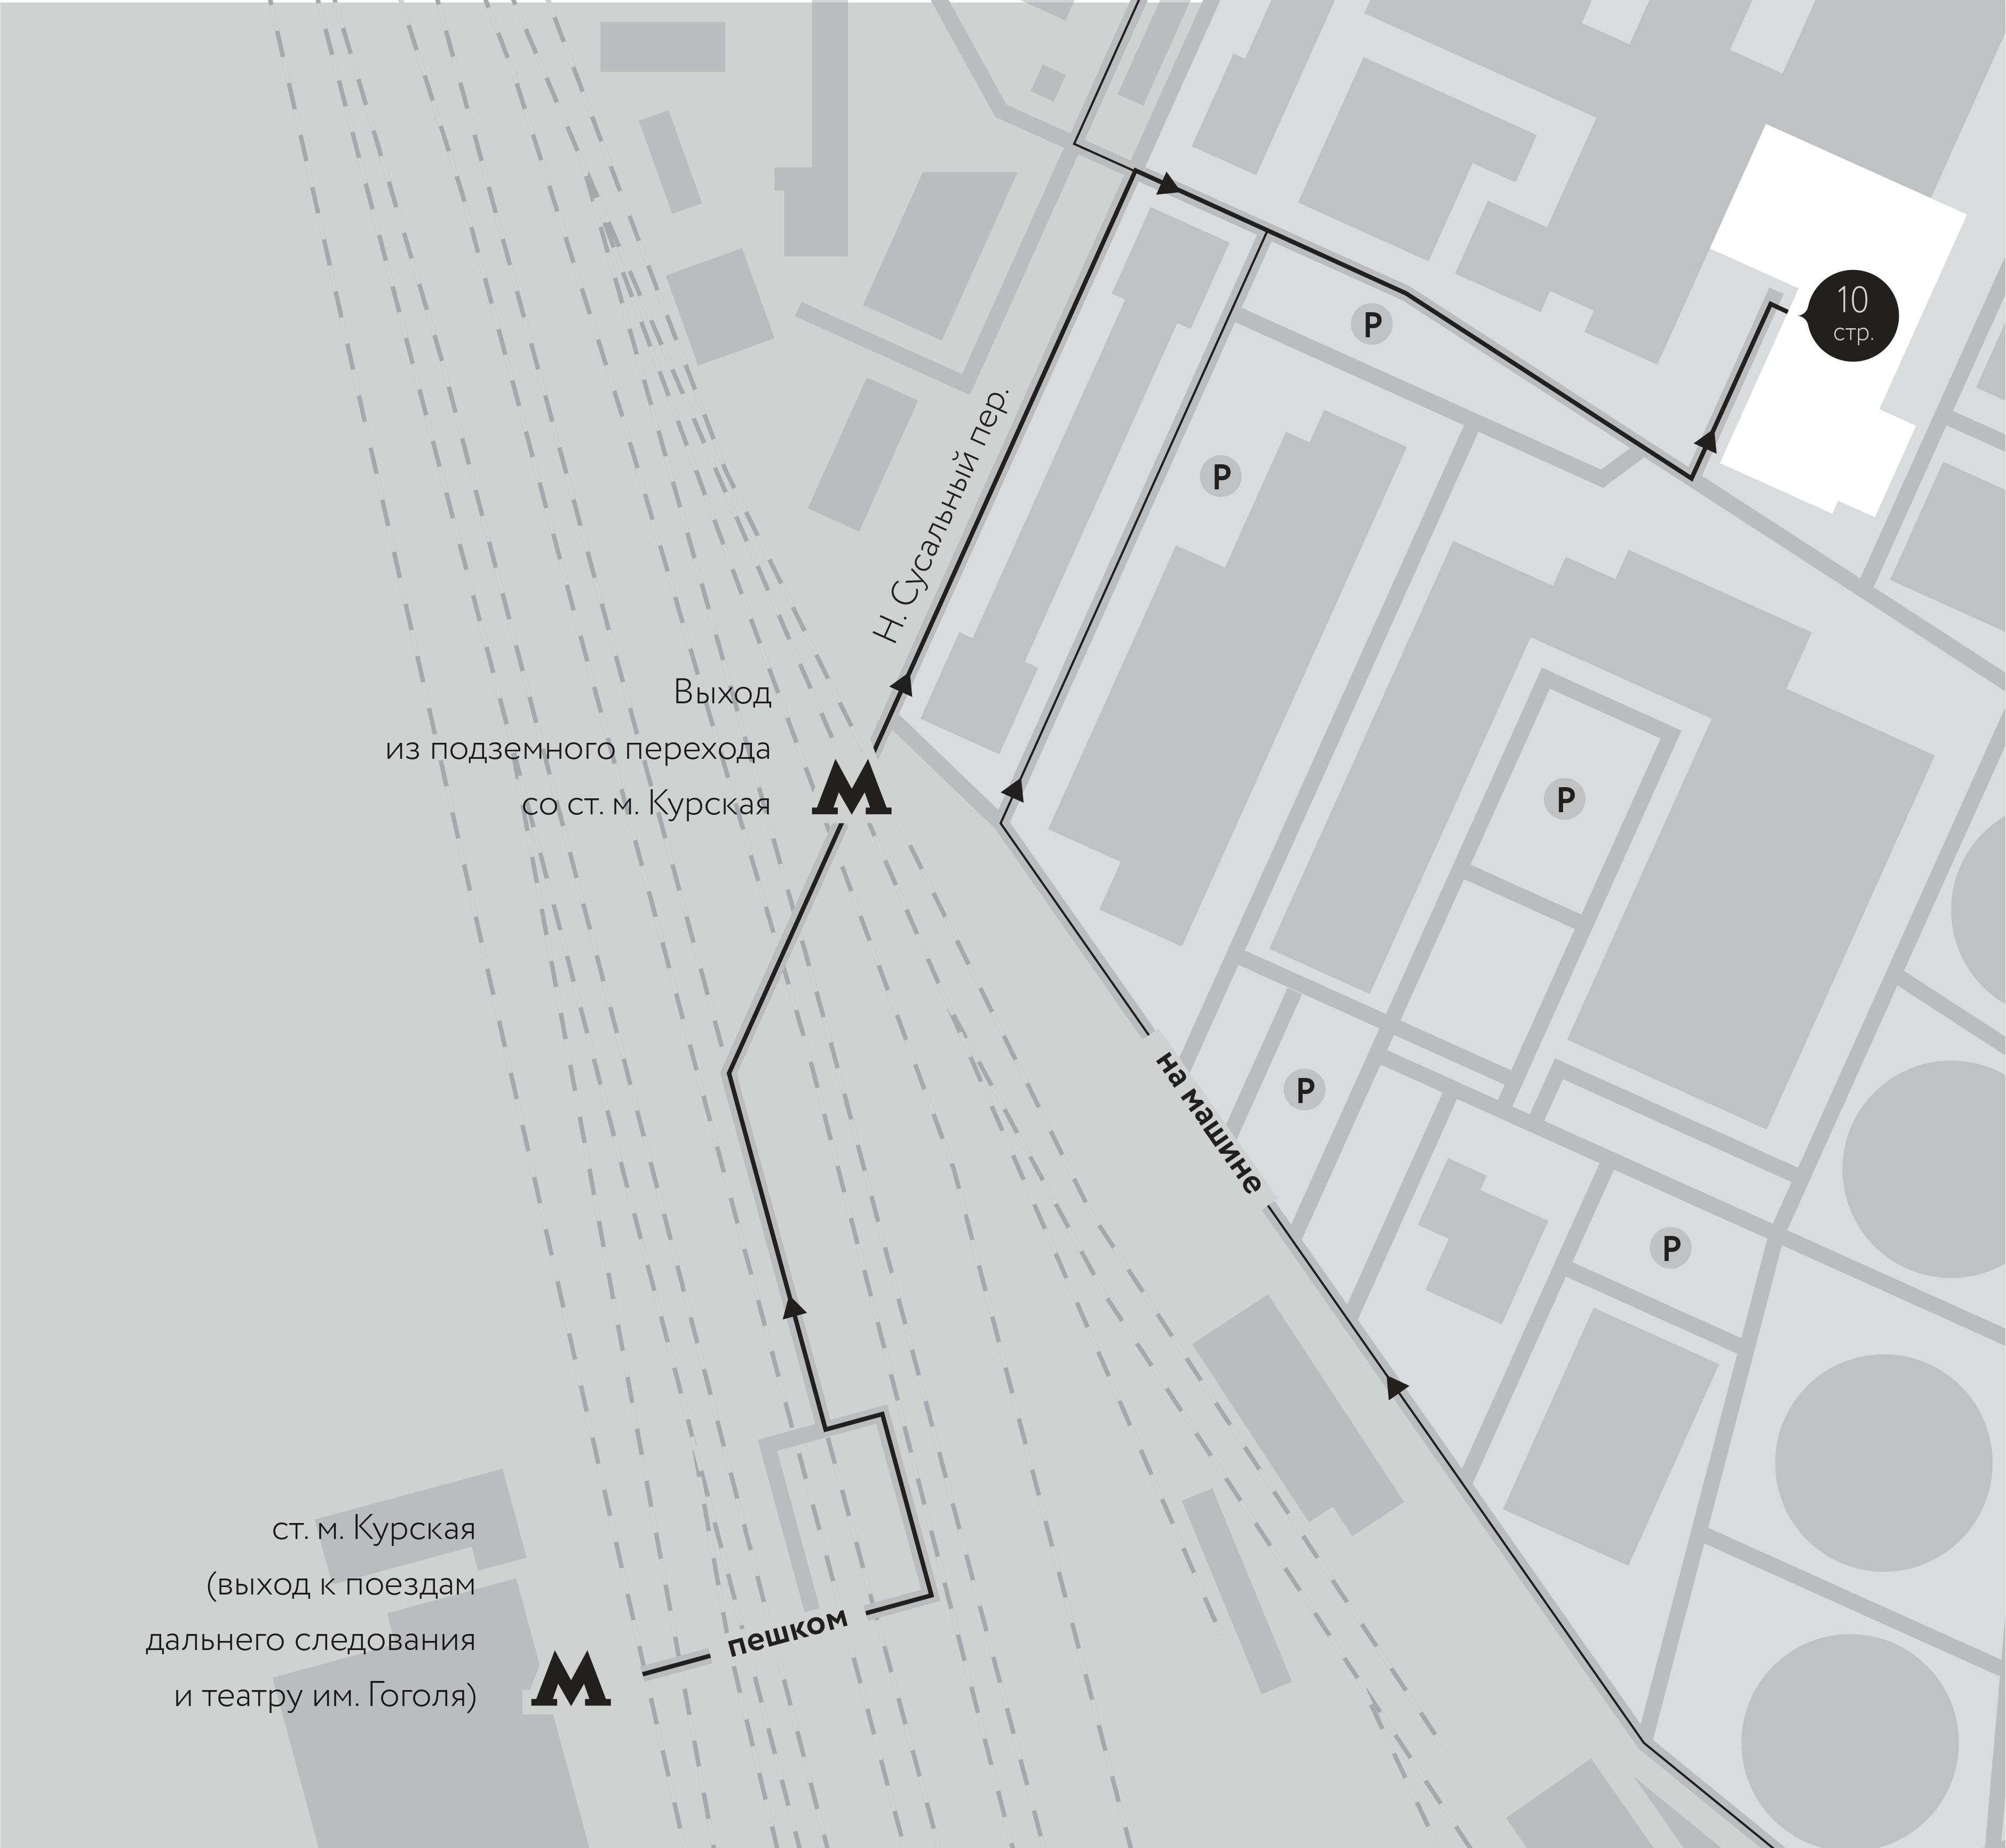 Пешеходная карта дизайн бюро «‎BERLOGA»‎